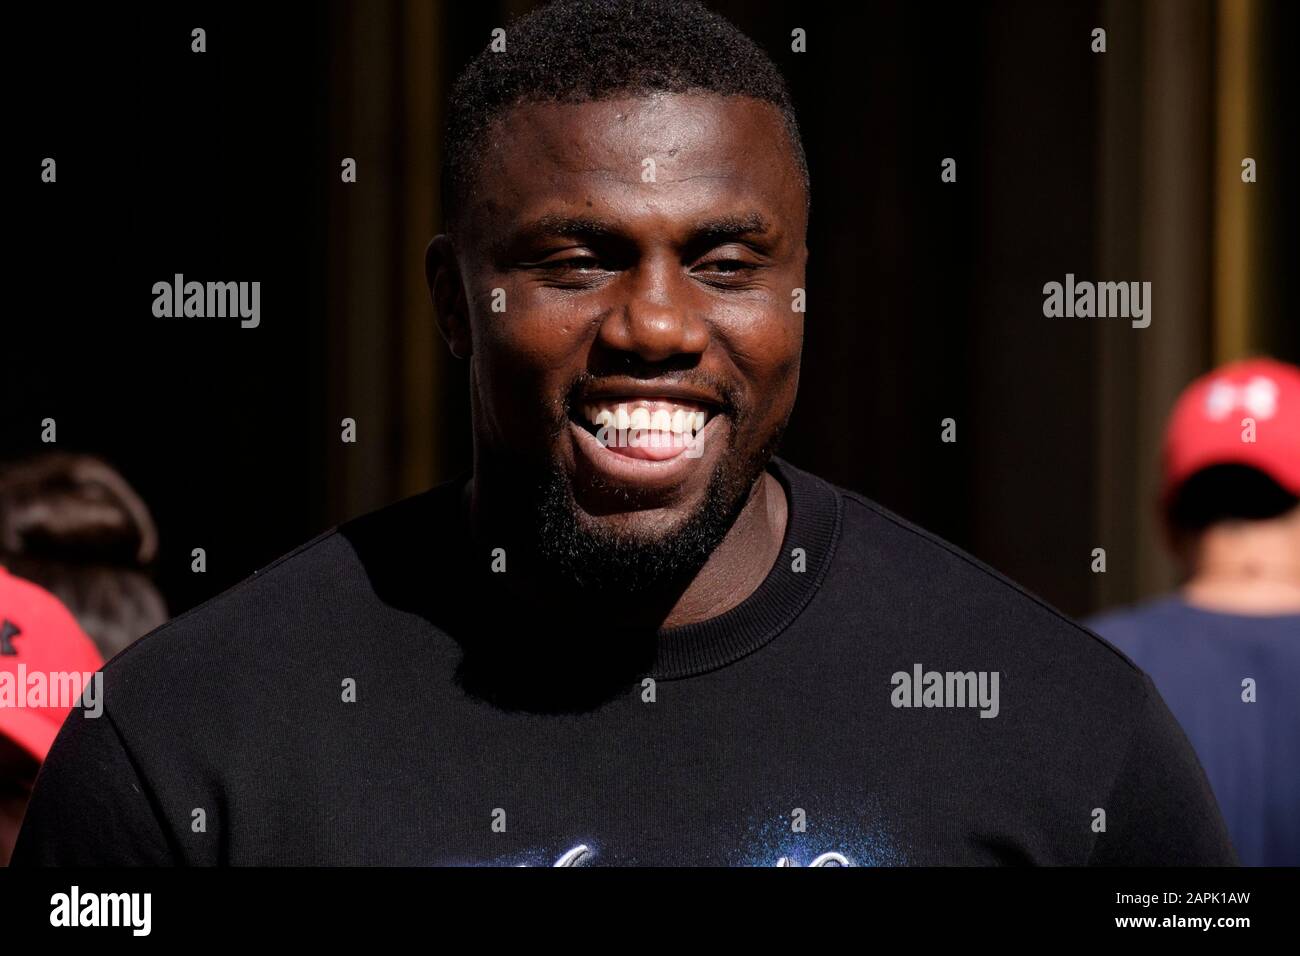 Rue de Londres: Homme, 20s, souriant, appartenance ethnique des Caraïbes africaines. Banque D'Images